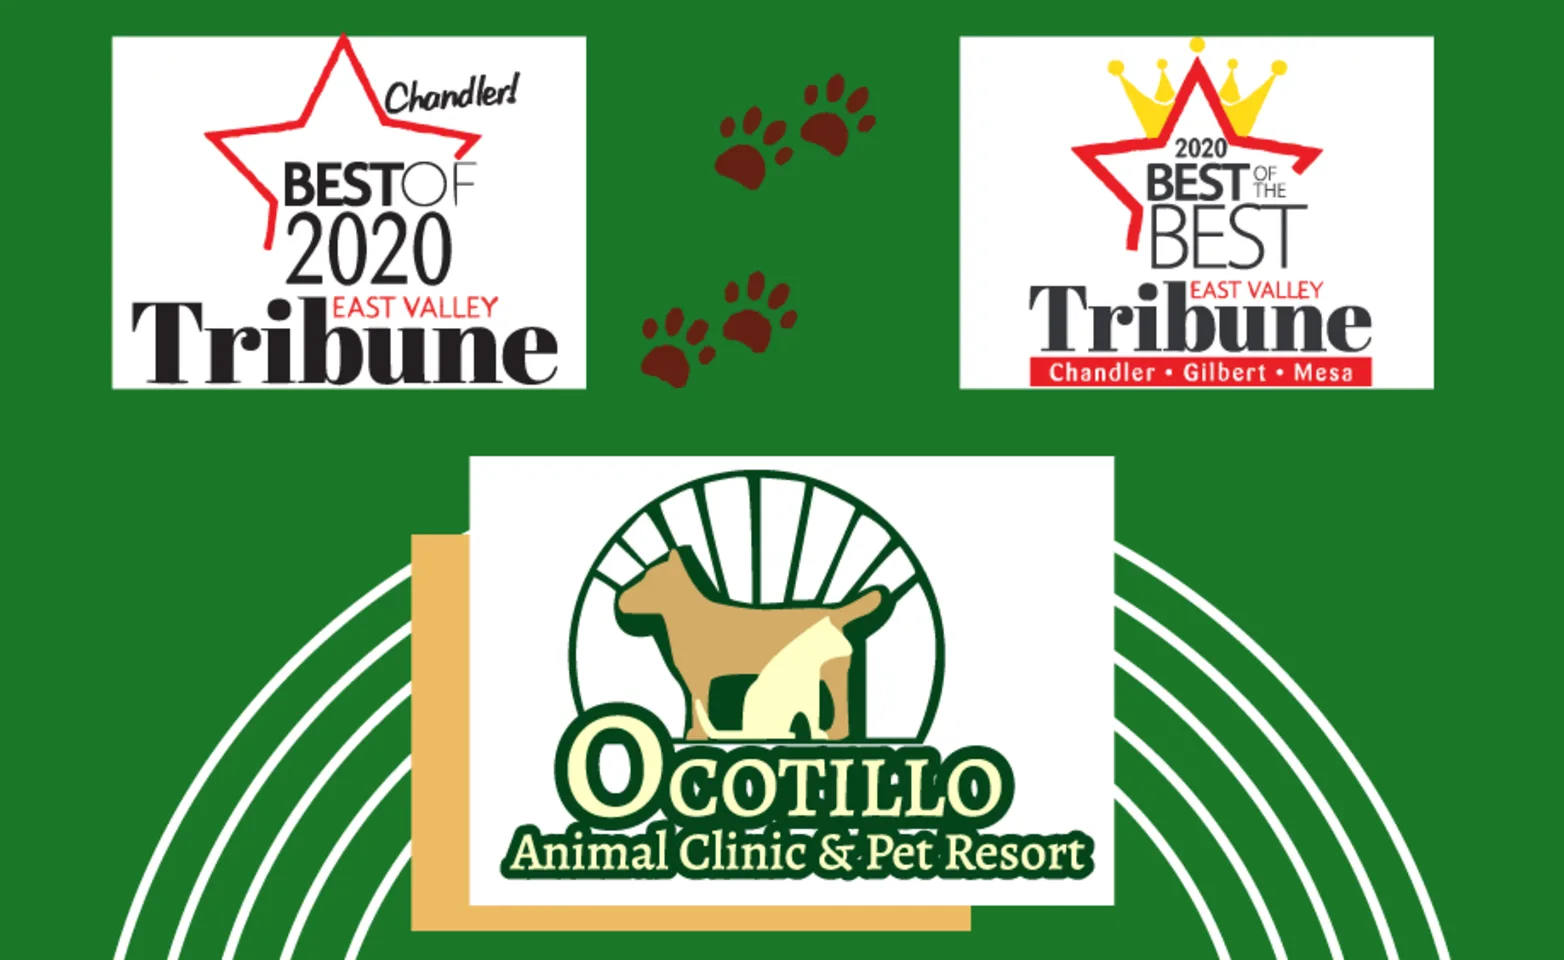 Ocotillo Animal Clinic and Pet Resort, 1014 - Best Veterinary Hospital Banner